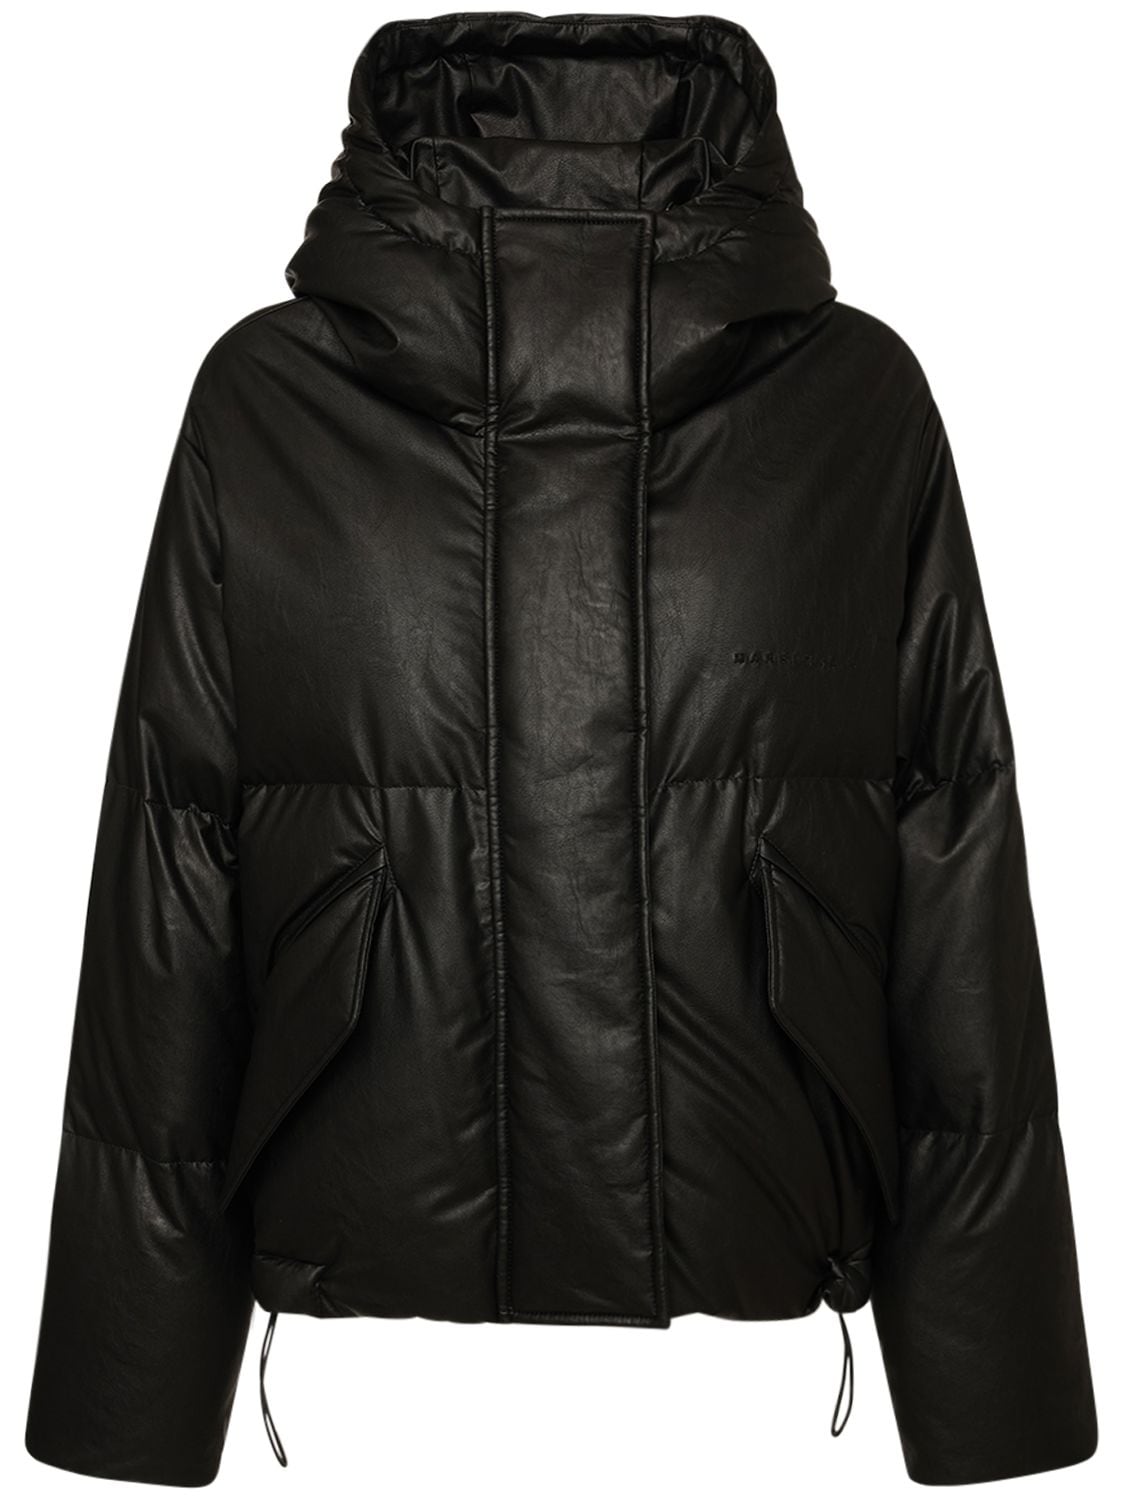 MM6 MAISON MARGIELA Oversized Faux Leather Down Jacket